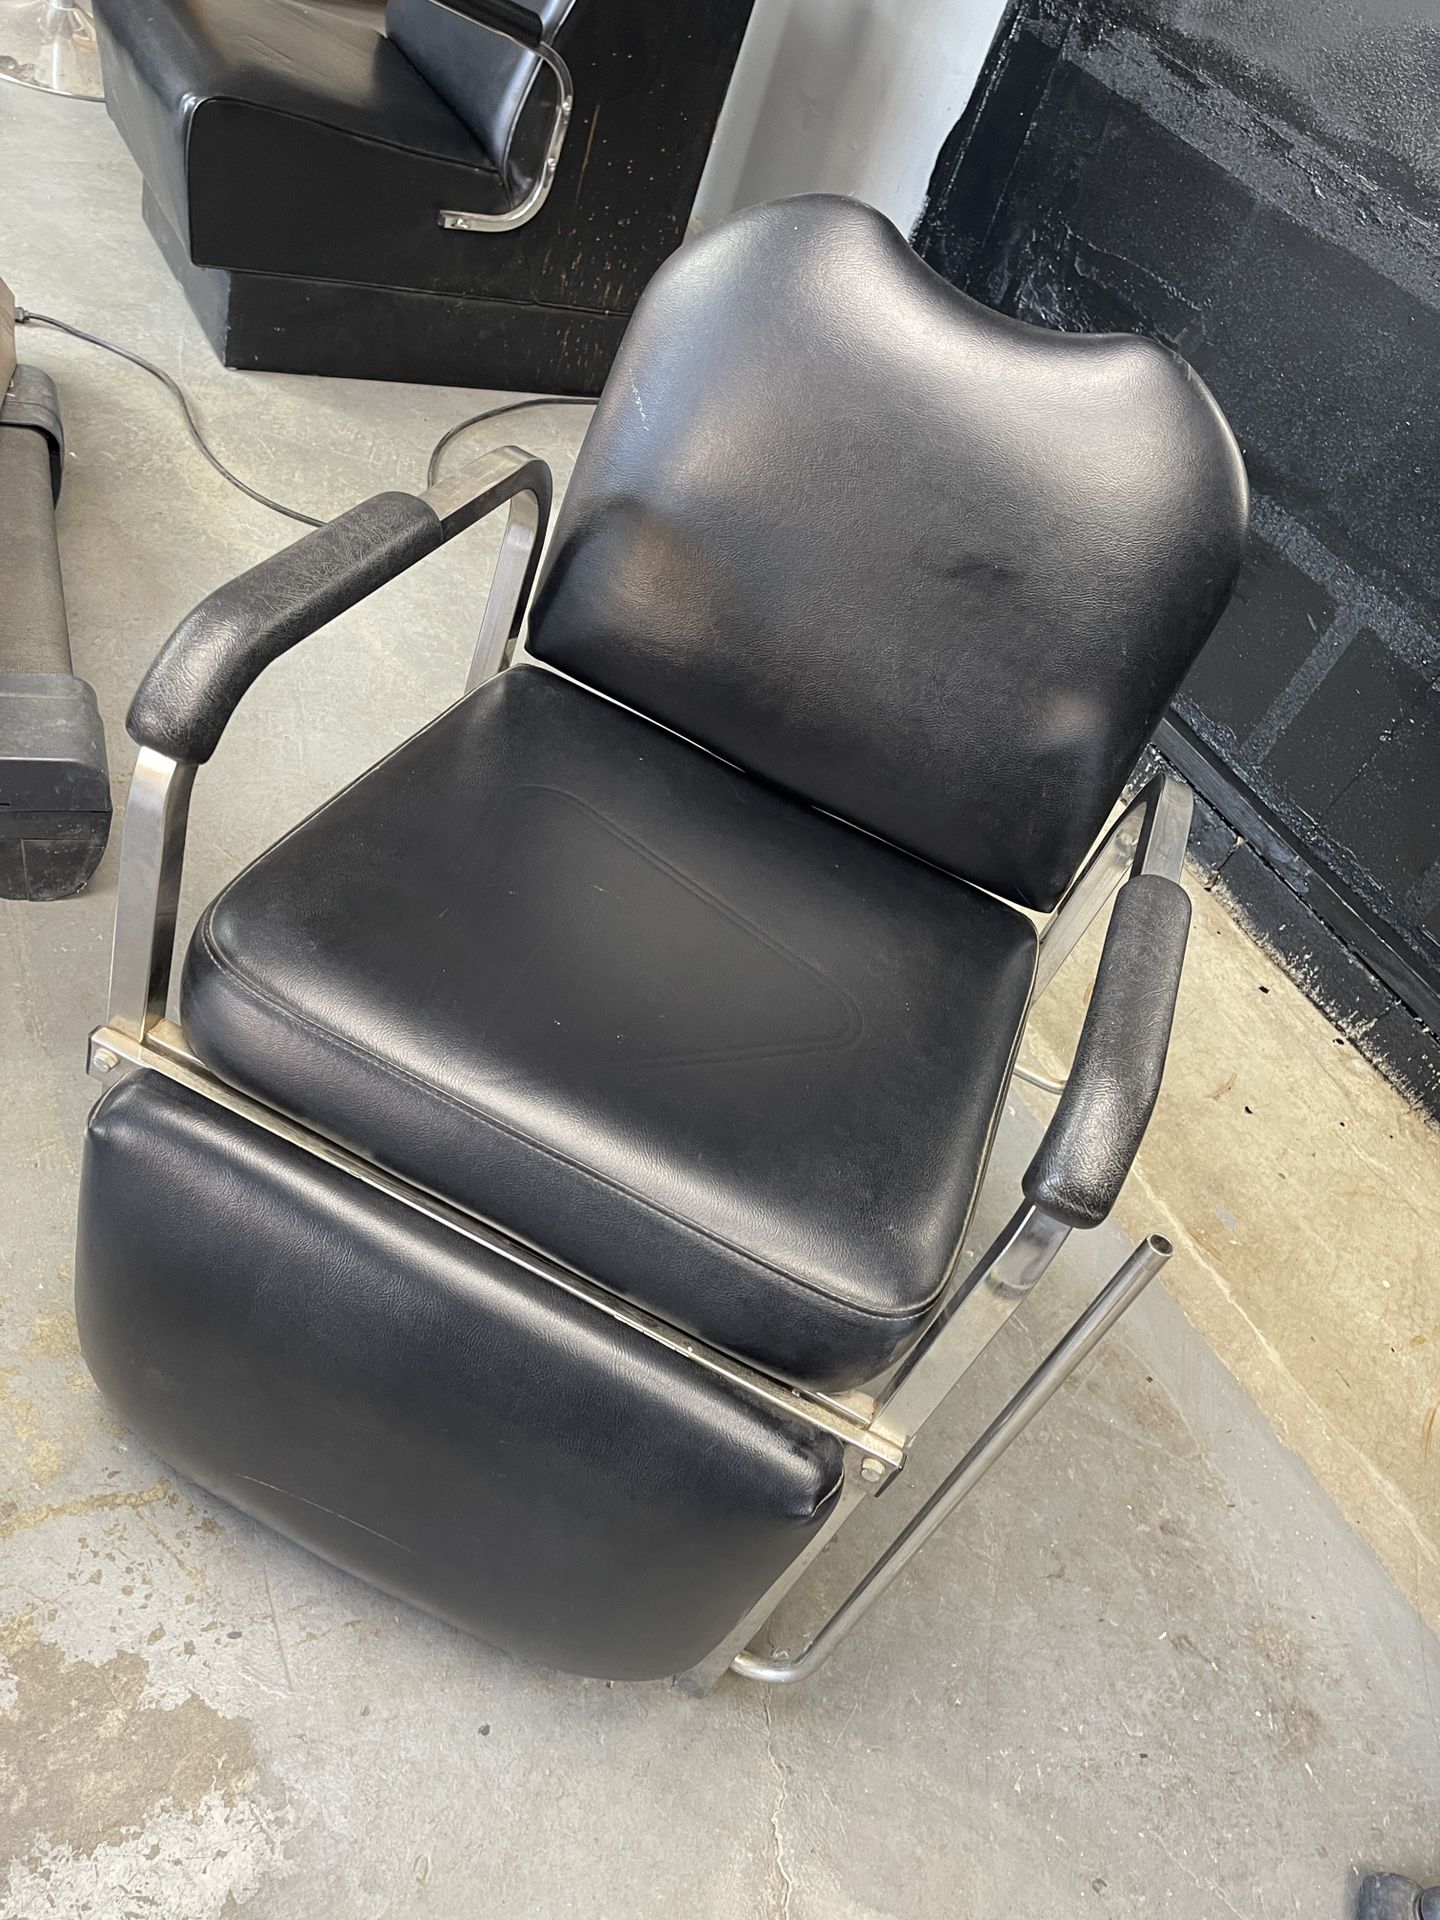 Salon Shampoo Chair 